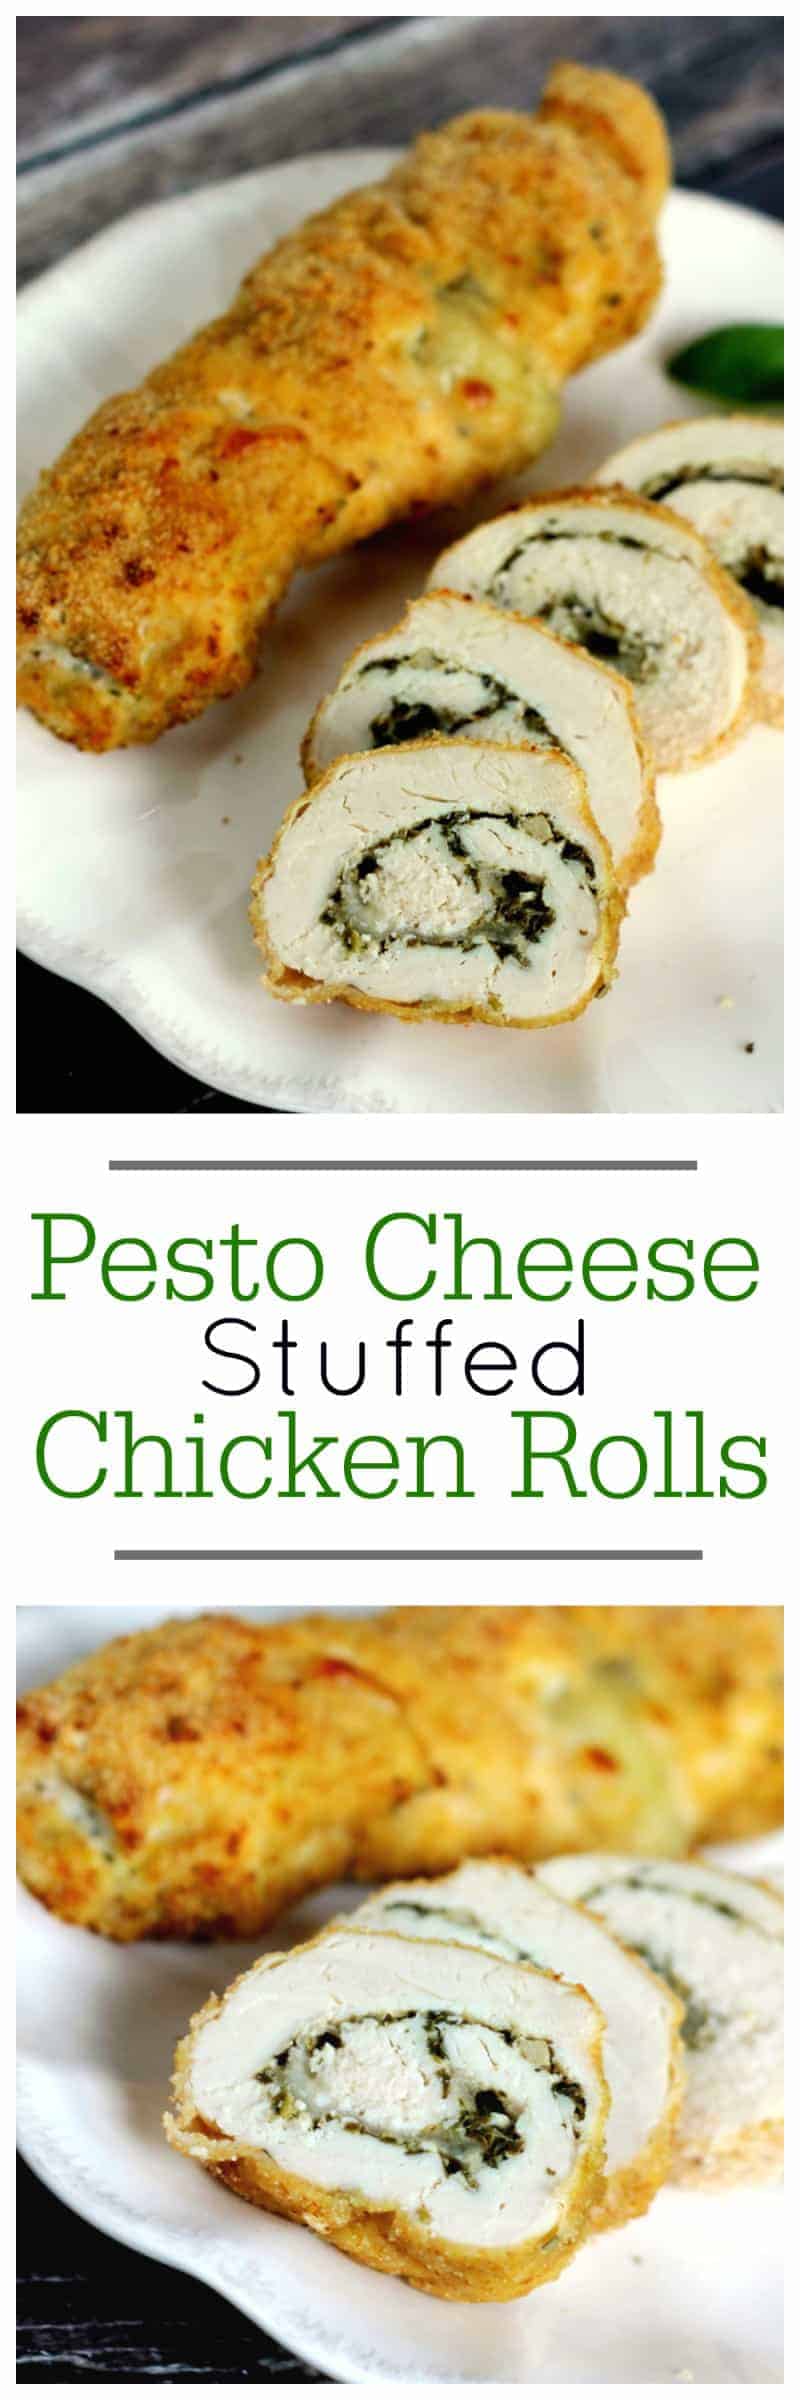 pesto cheese stuffed chicken rolls main dish recipe